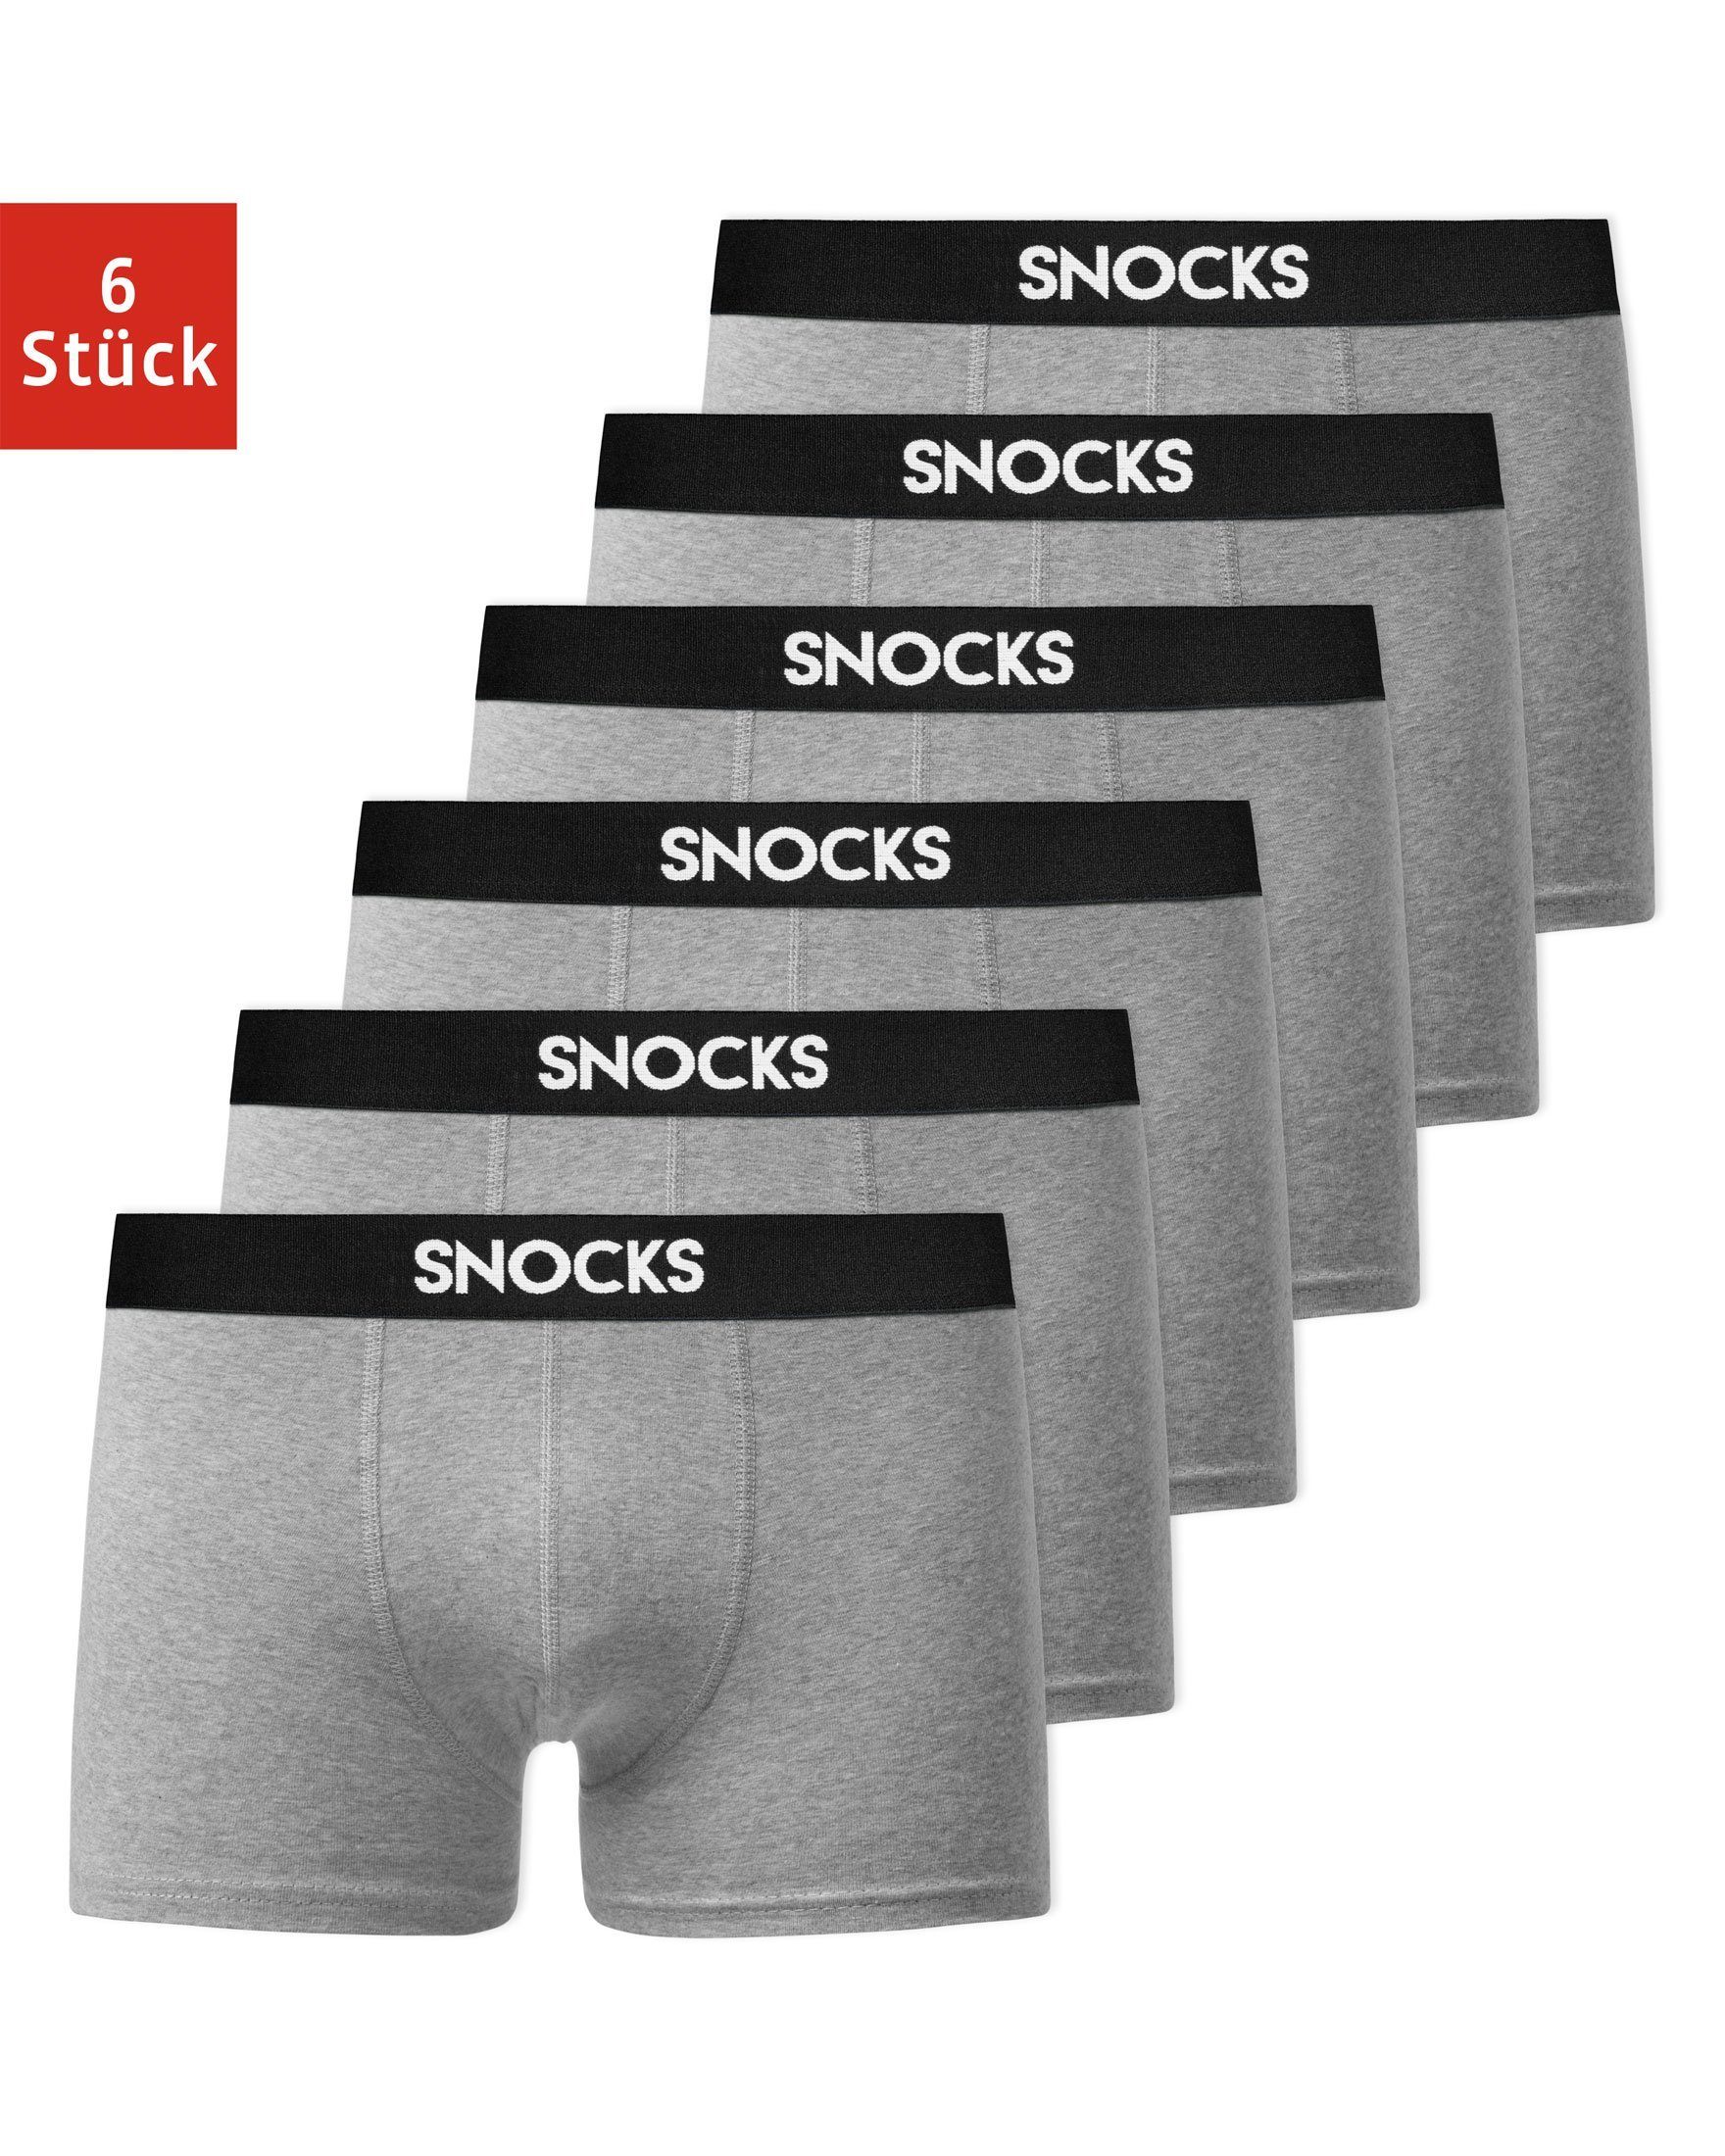 SNOCKS Boxershorts Enge Boxershorts Pants Herren Männer Unterhosen (6-St)  aus Bio-Baumwolle, ohne kratzenden Zettel